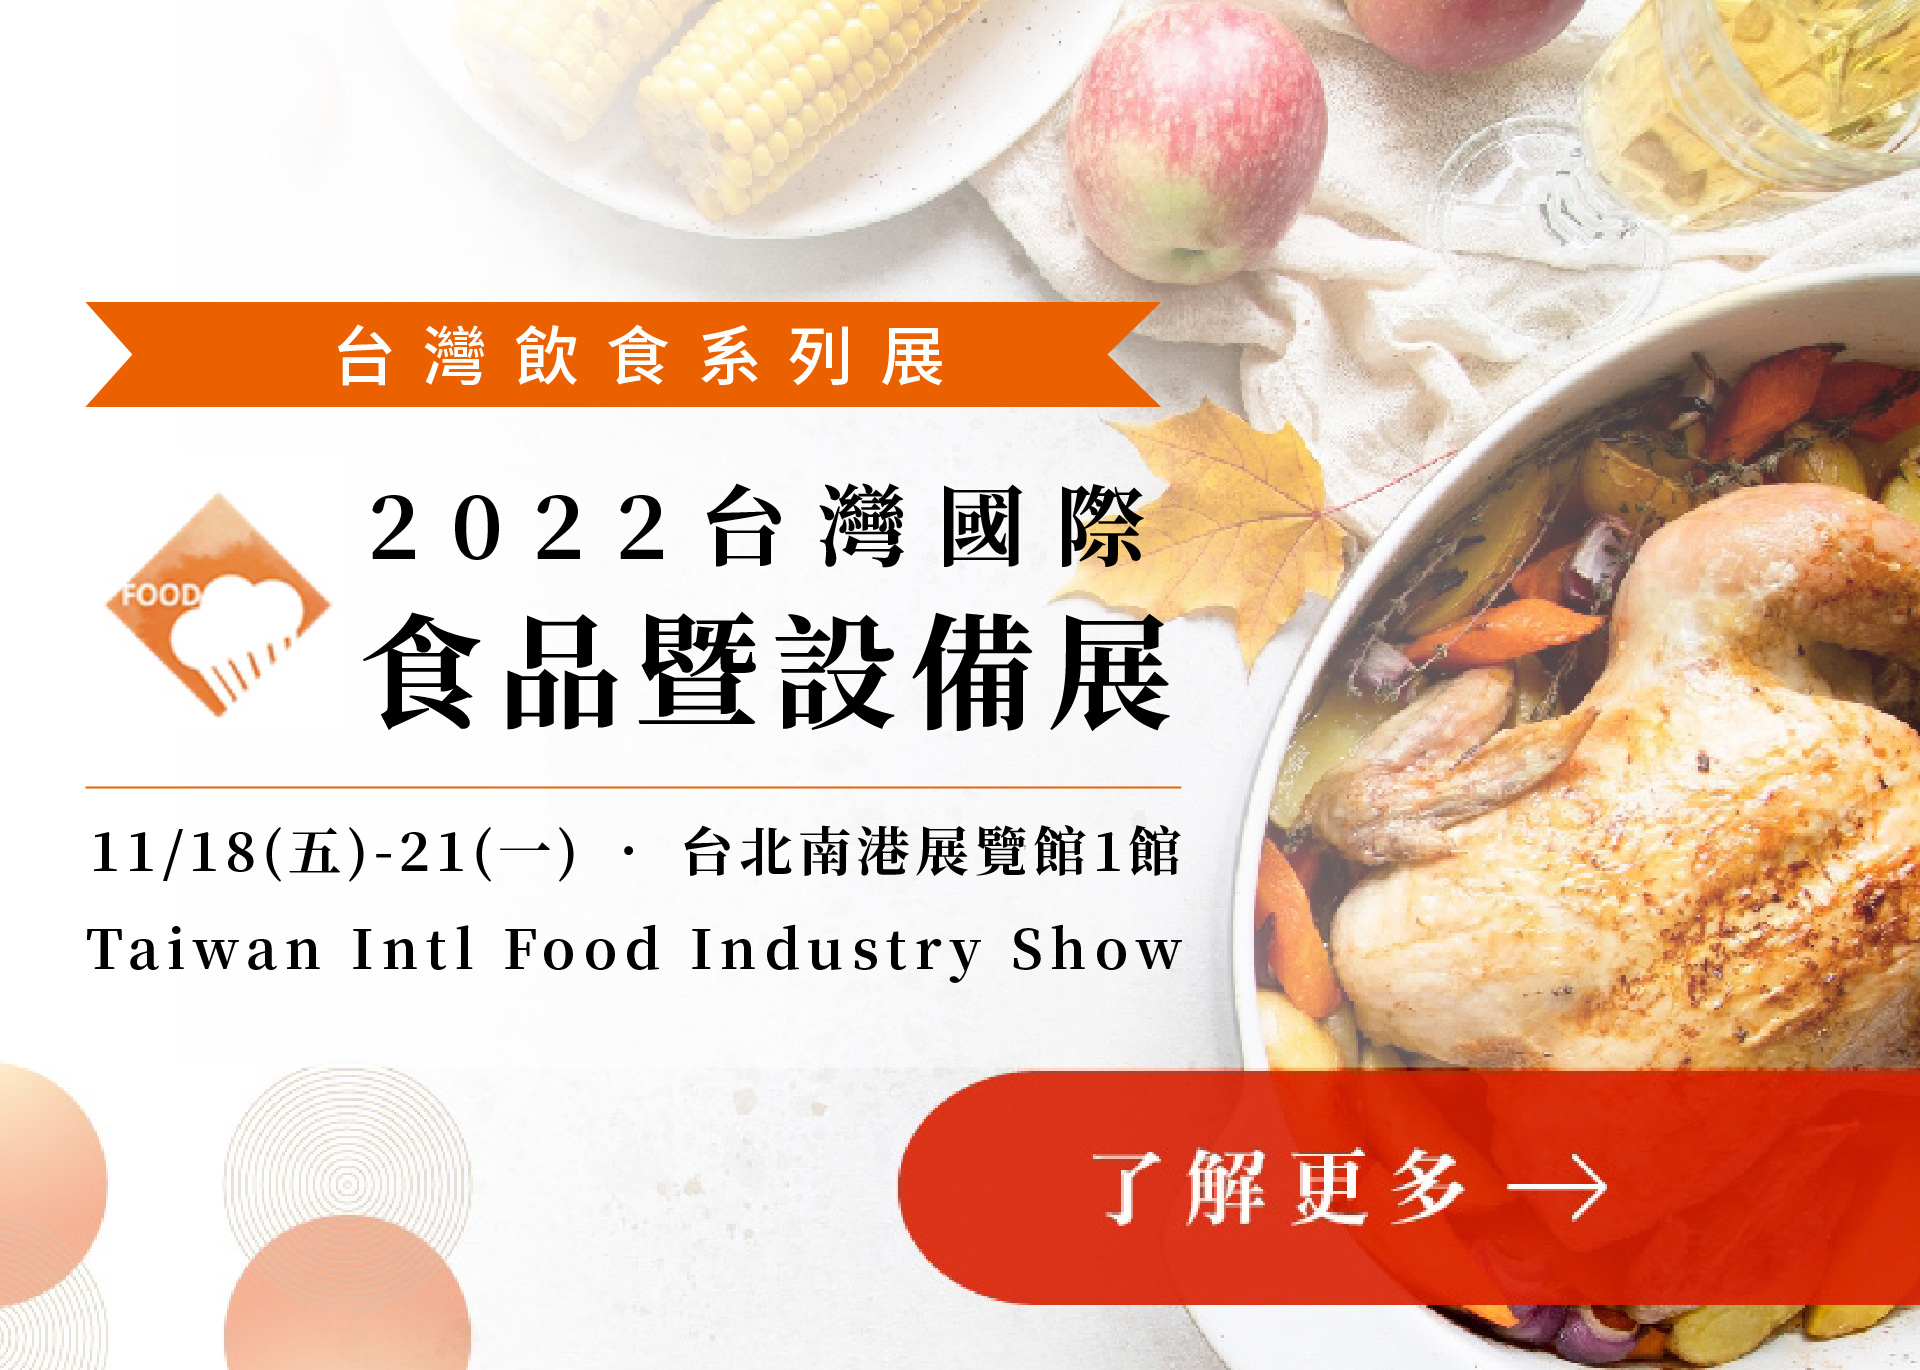 2022台灣國際食品暨設備展